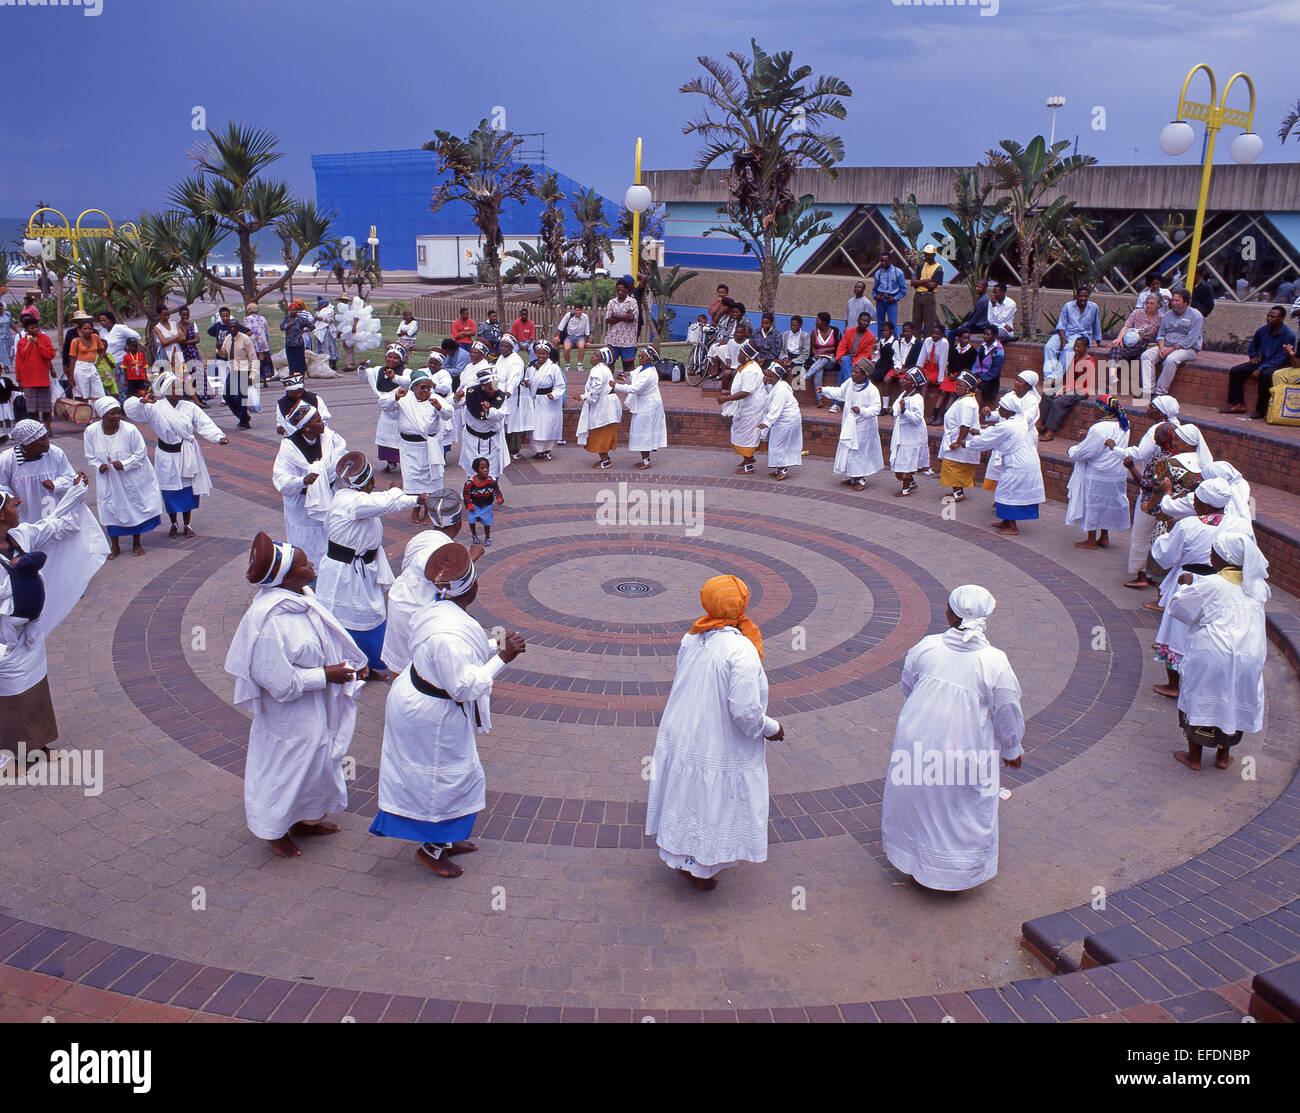 Zulu-Frauen Tänzer auf der Strandpromenade, Durban, Provinz KwaZulu-Natal, Südafrika Stockfoto